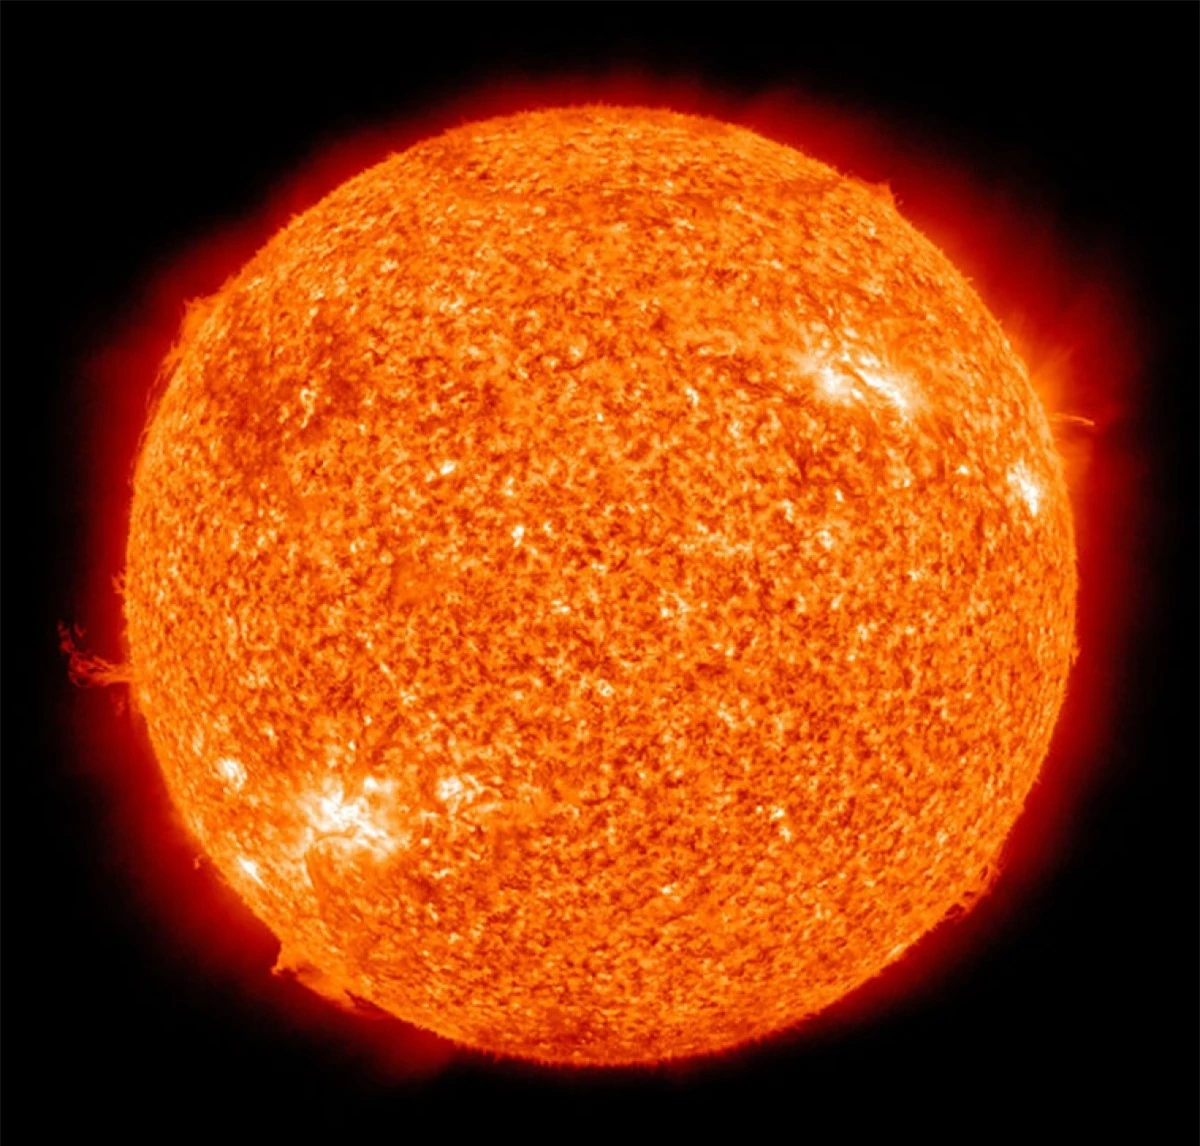 Bởi vì phải mất hơn 8 phút để ánh sáng từ Mặt trời đến Trái đất nên chúng ta sẽ không nhận thấy ngay sự thay đổi đột ngột của Mặt trời ngay khi nó phát nổ./.